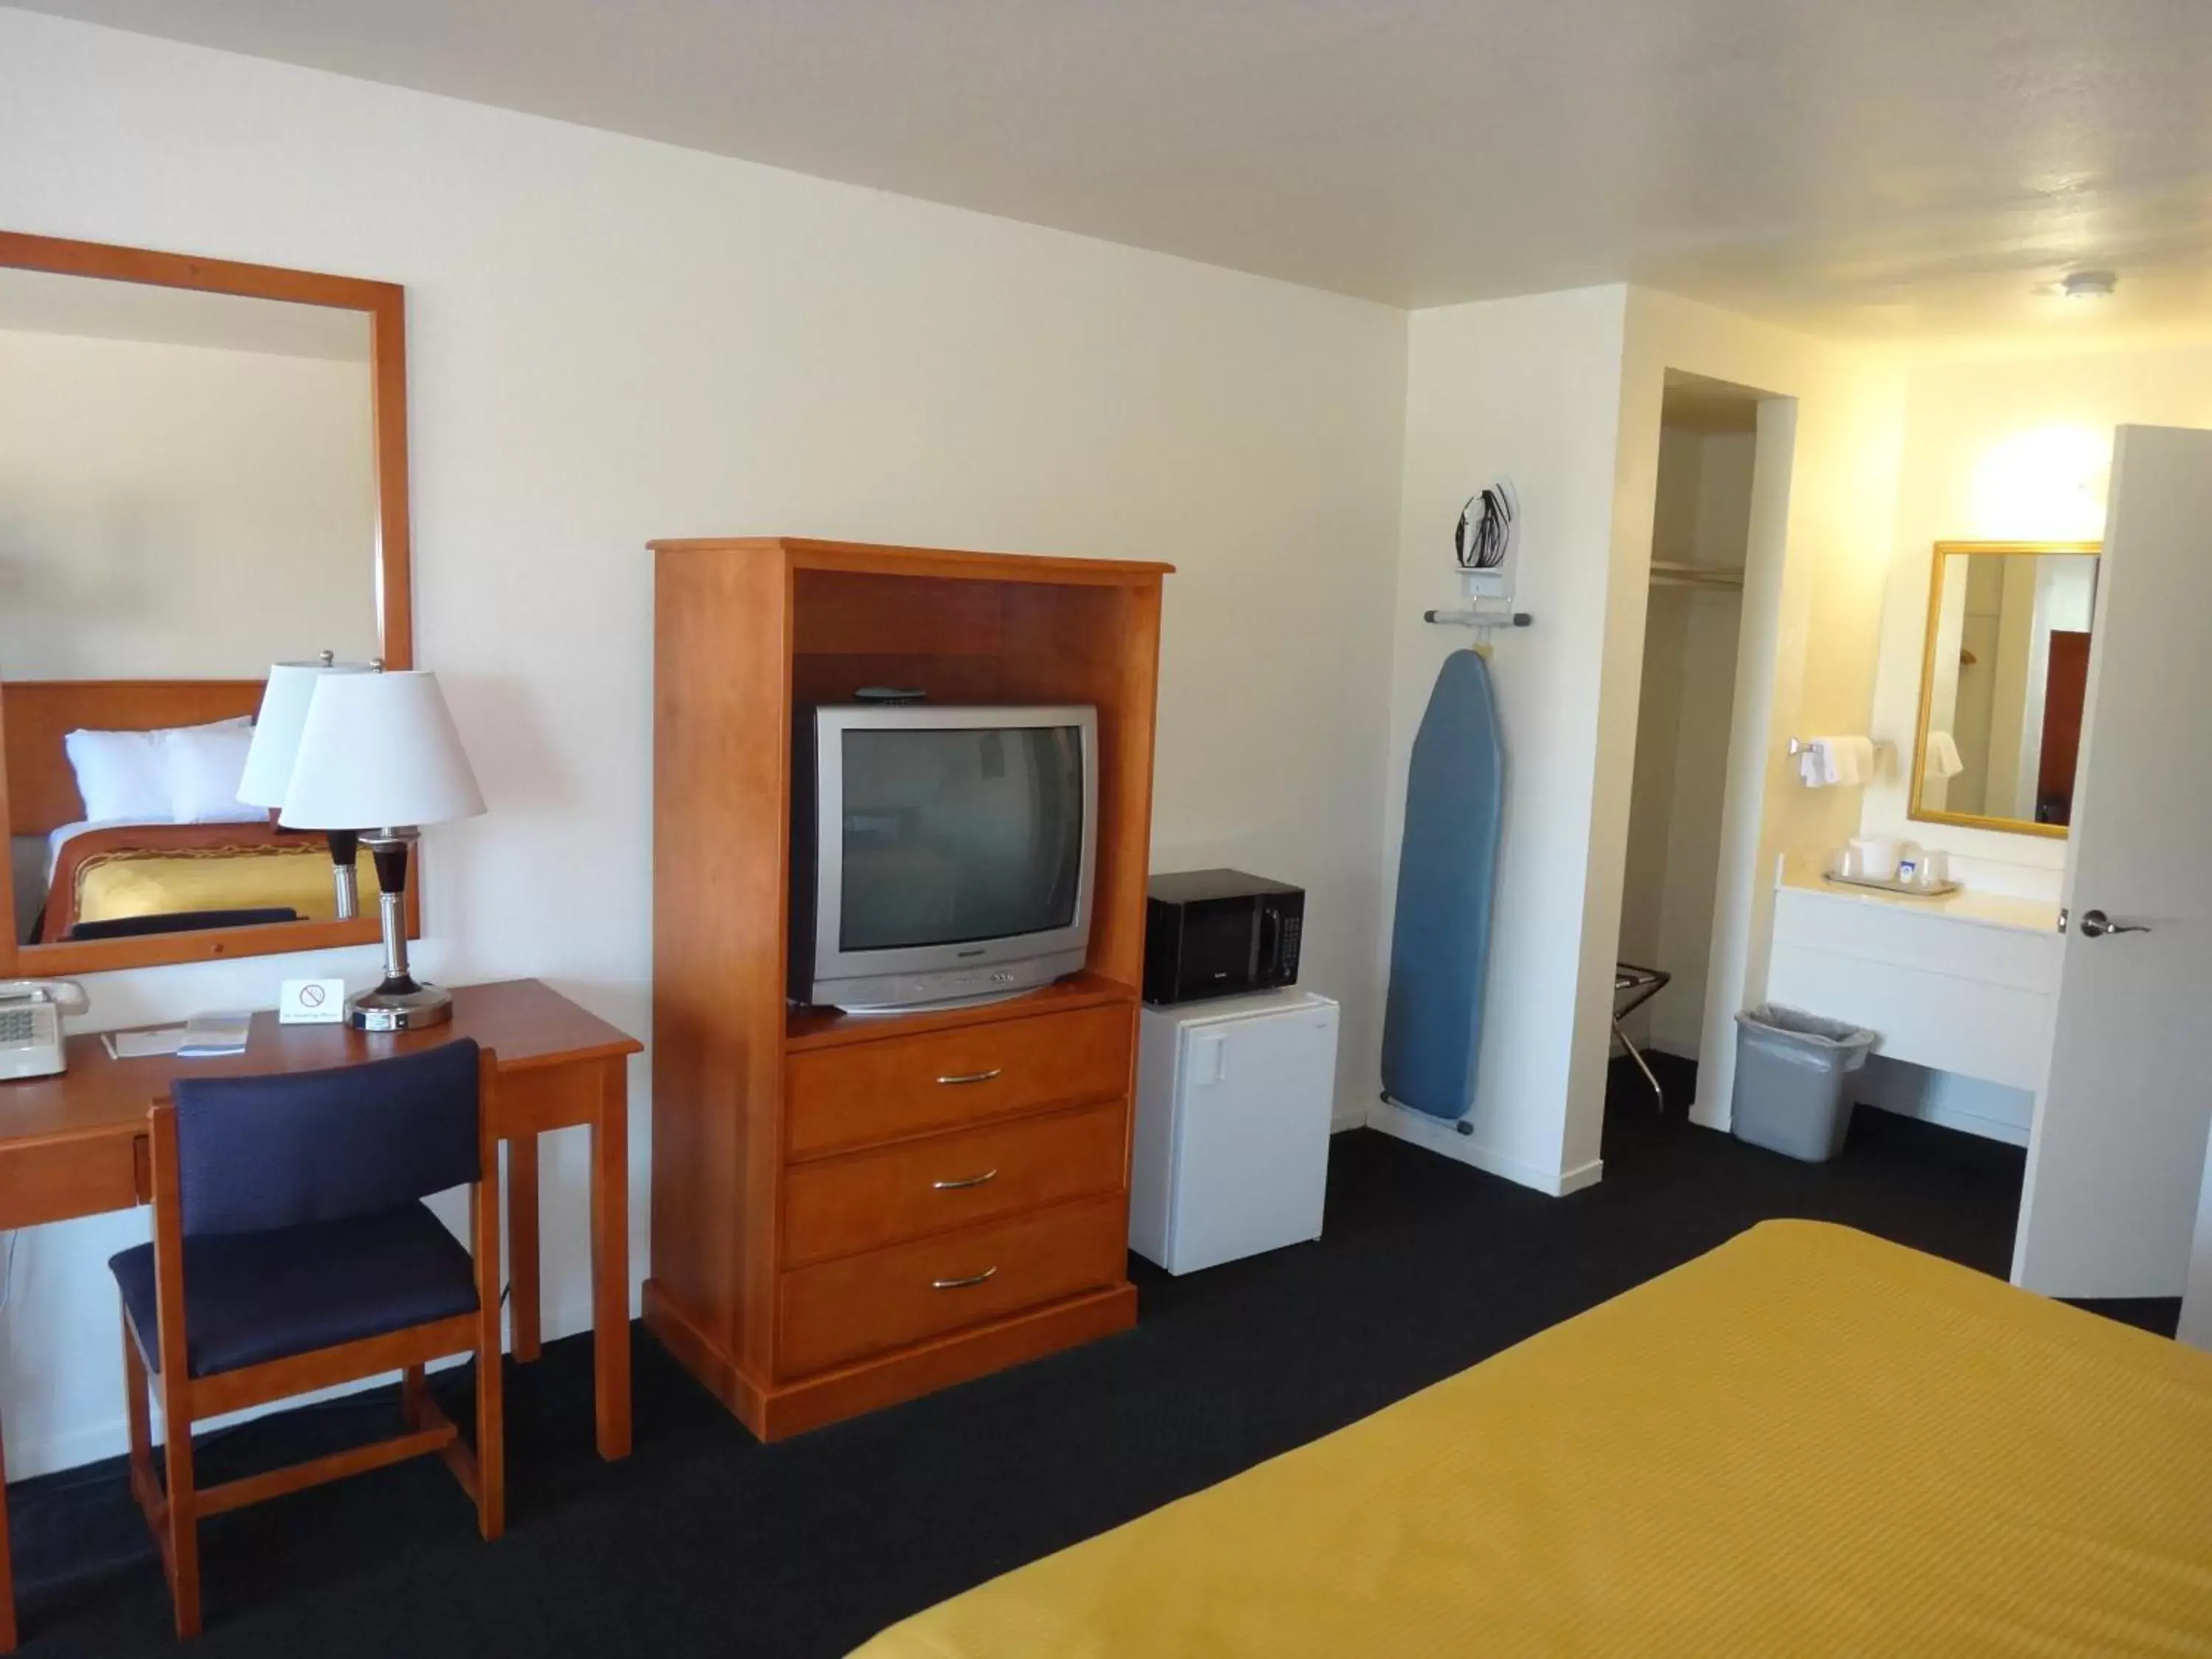 Bedroom, TV/Entertainment Center in Americas Best Value Inn Santa Rosa